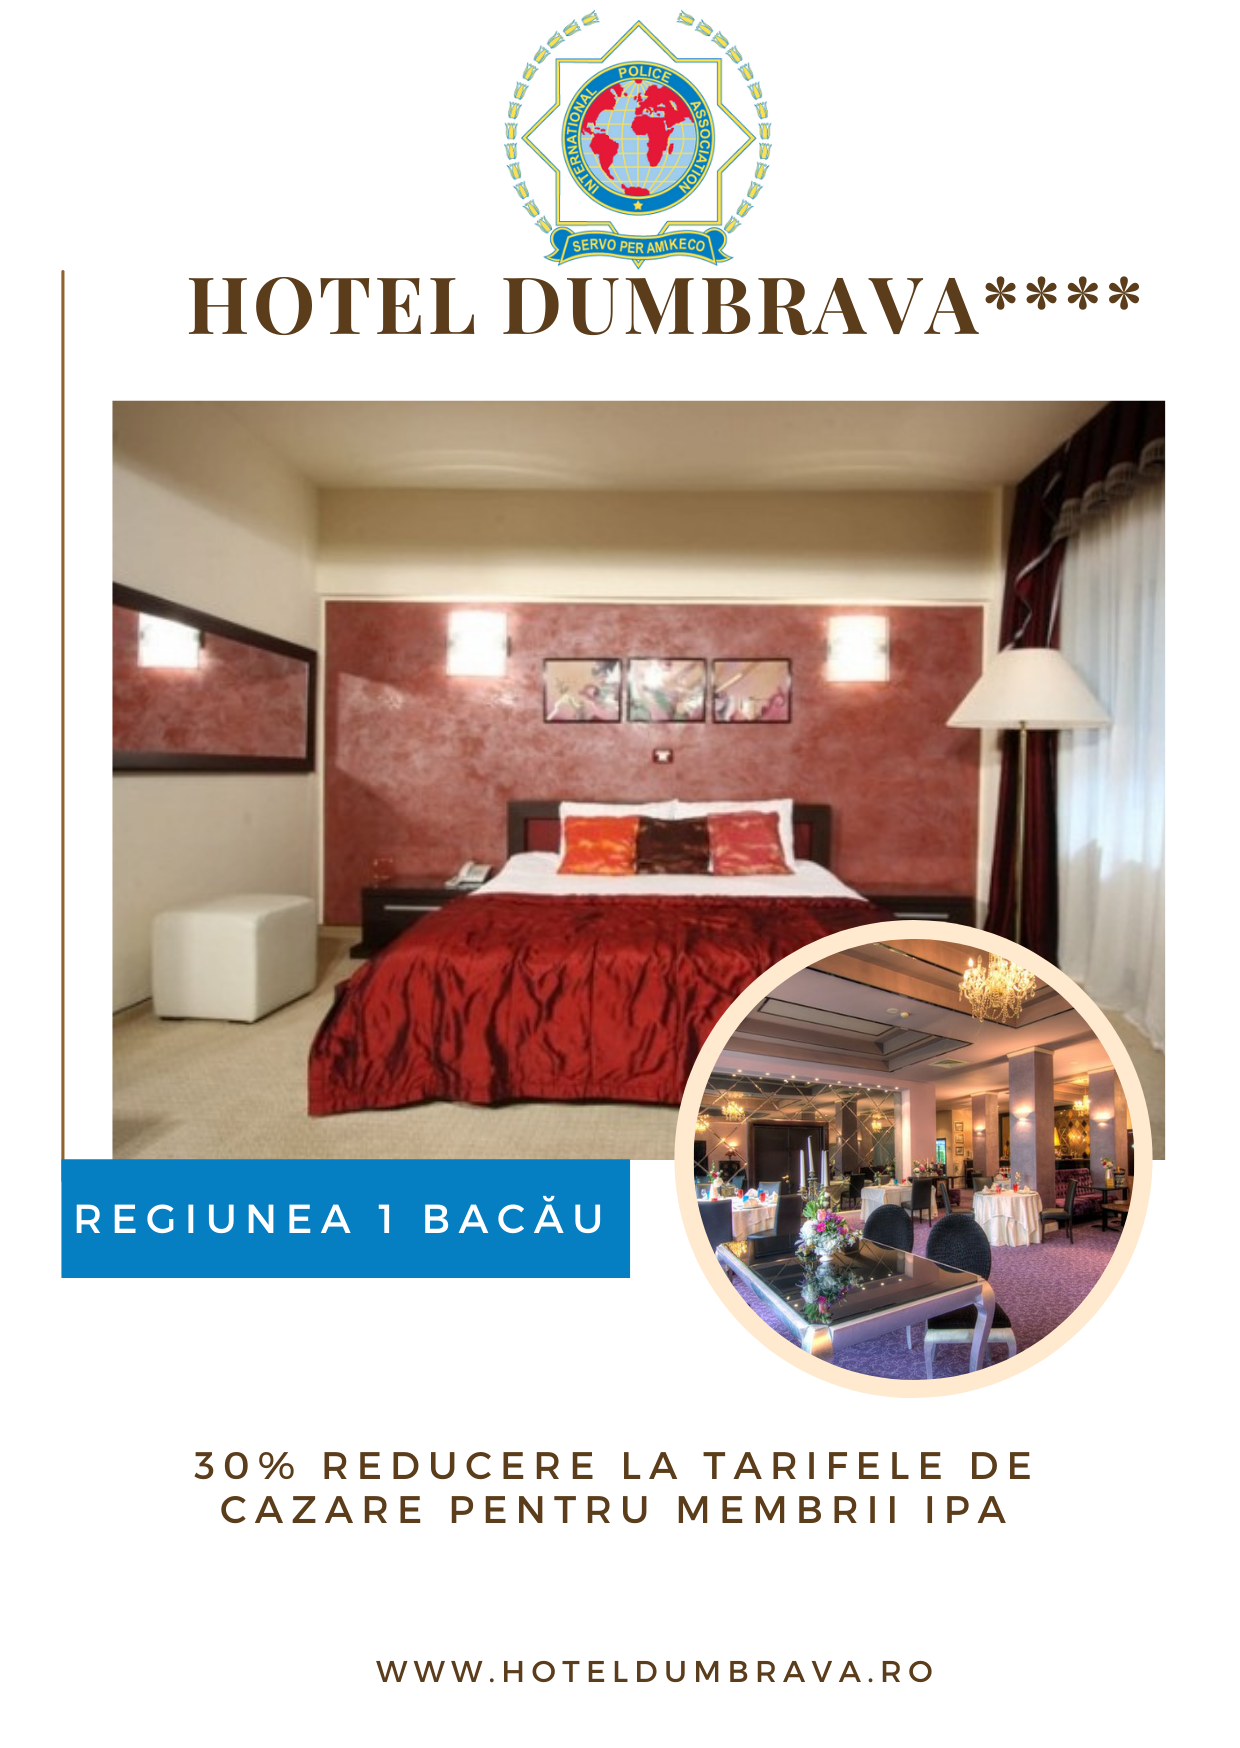 Regiunea 1 Bacau – Hotel Dumbrava